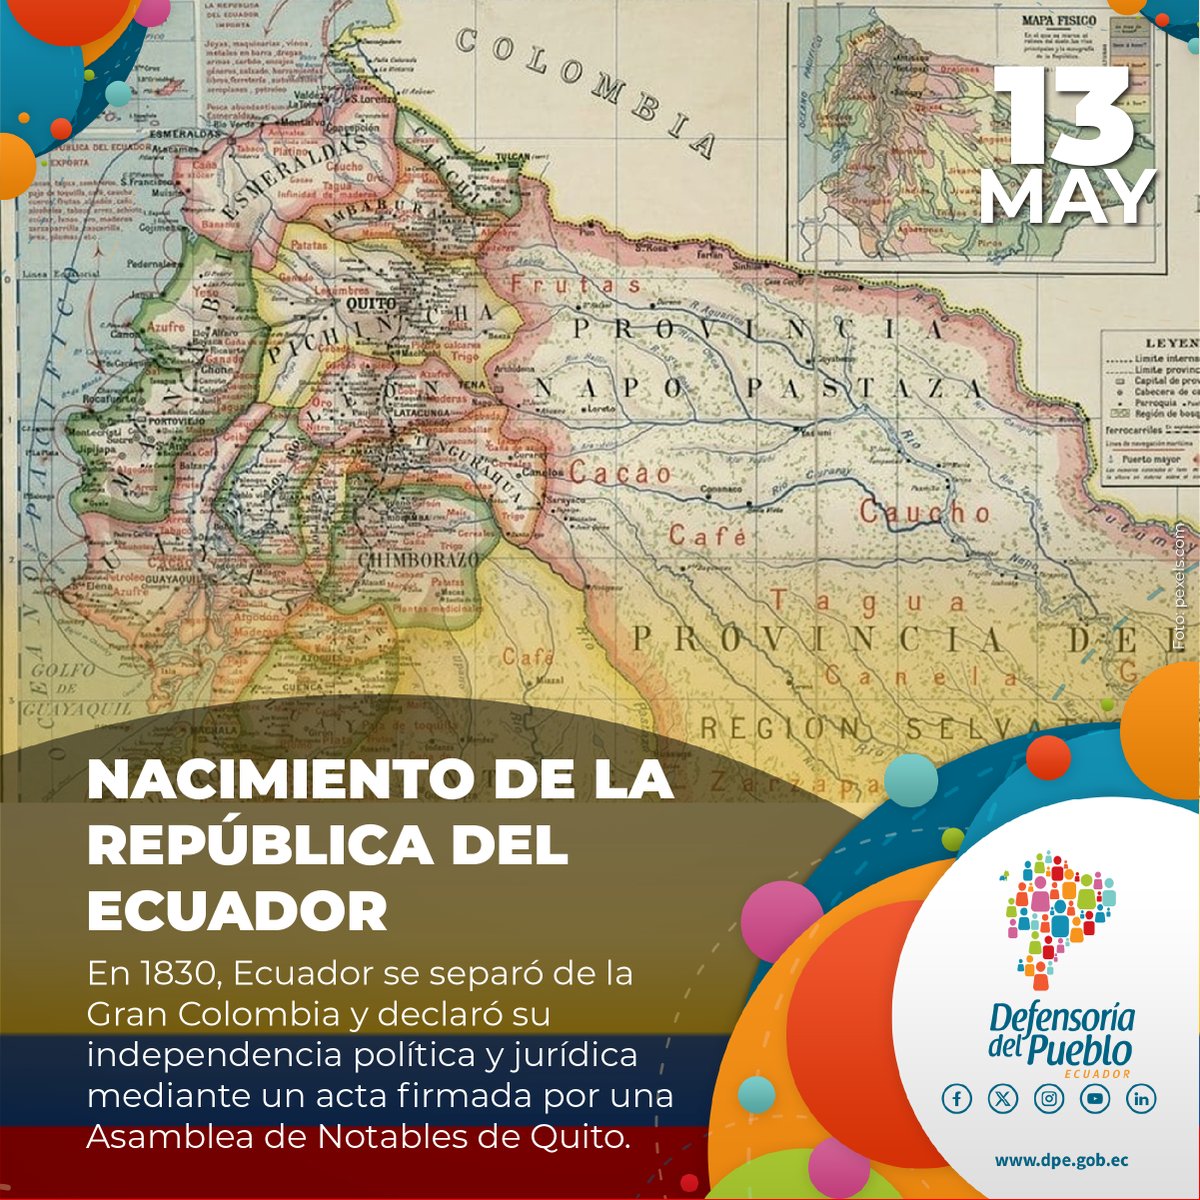 🇪🇨La #DefensoríaDelPueblo celebra el nacimiento del Ecuador como Estado y ratifica su compromiso con la población en la promoción de los #DerechosHumanos como principio de dignidad humana.